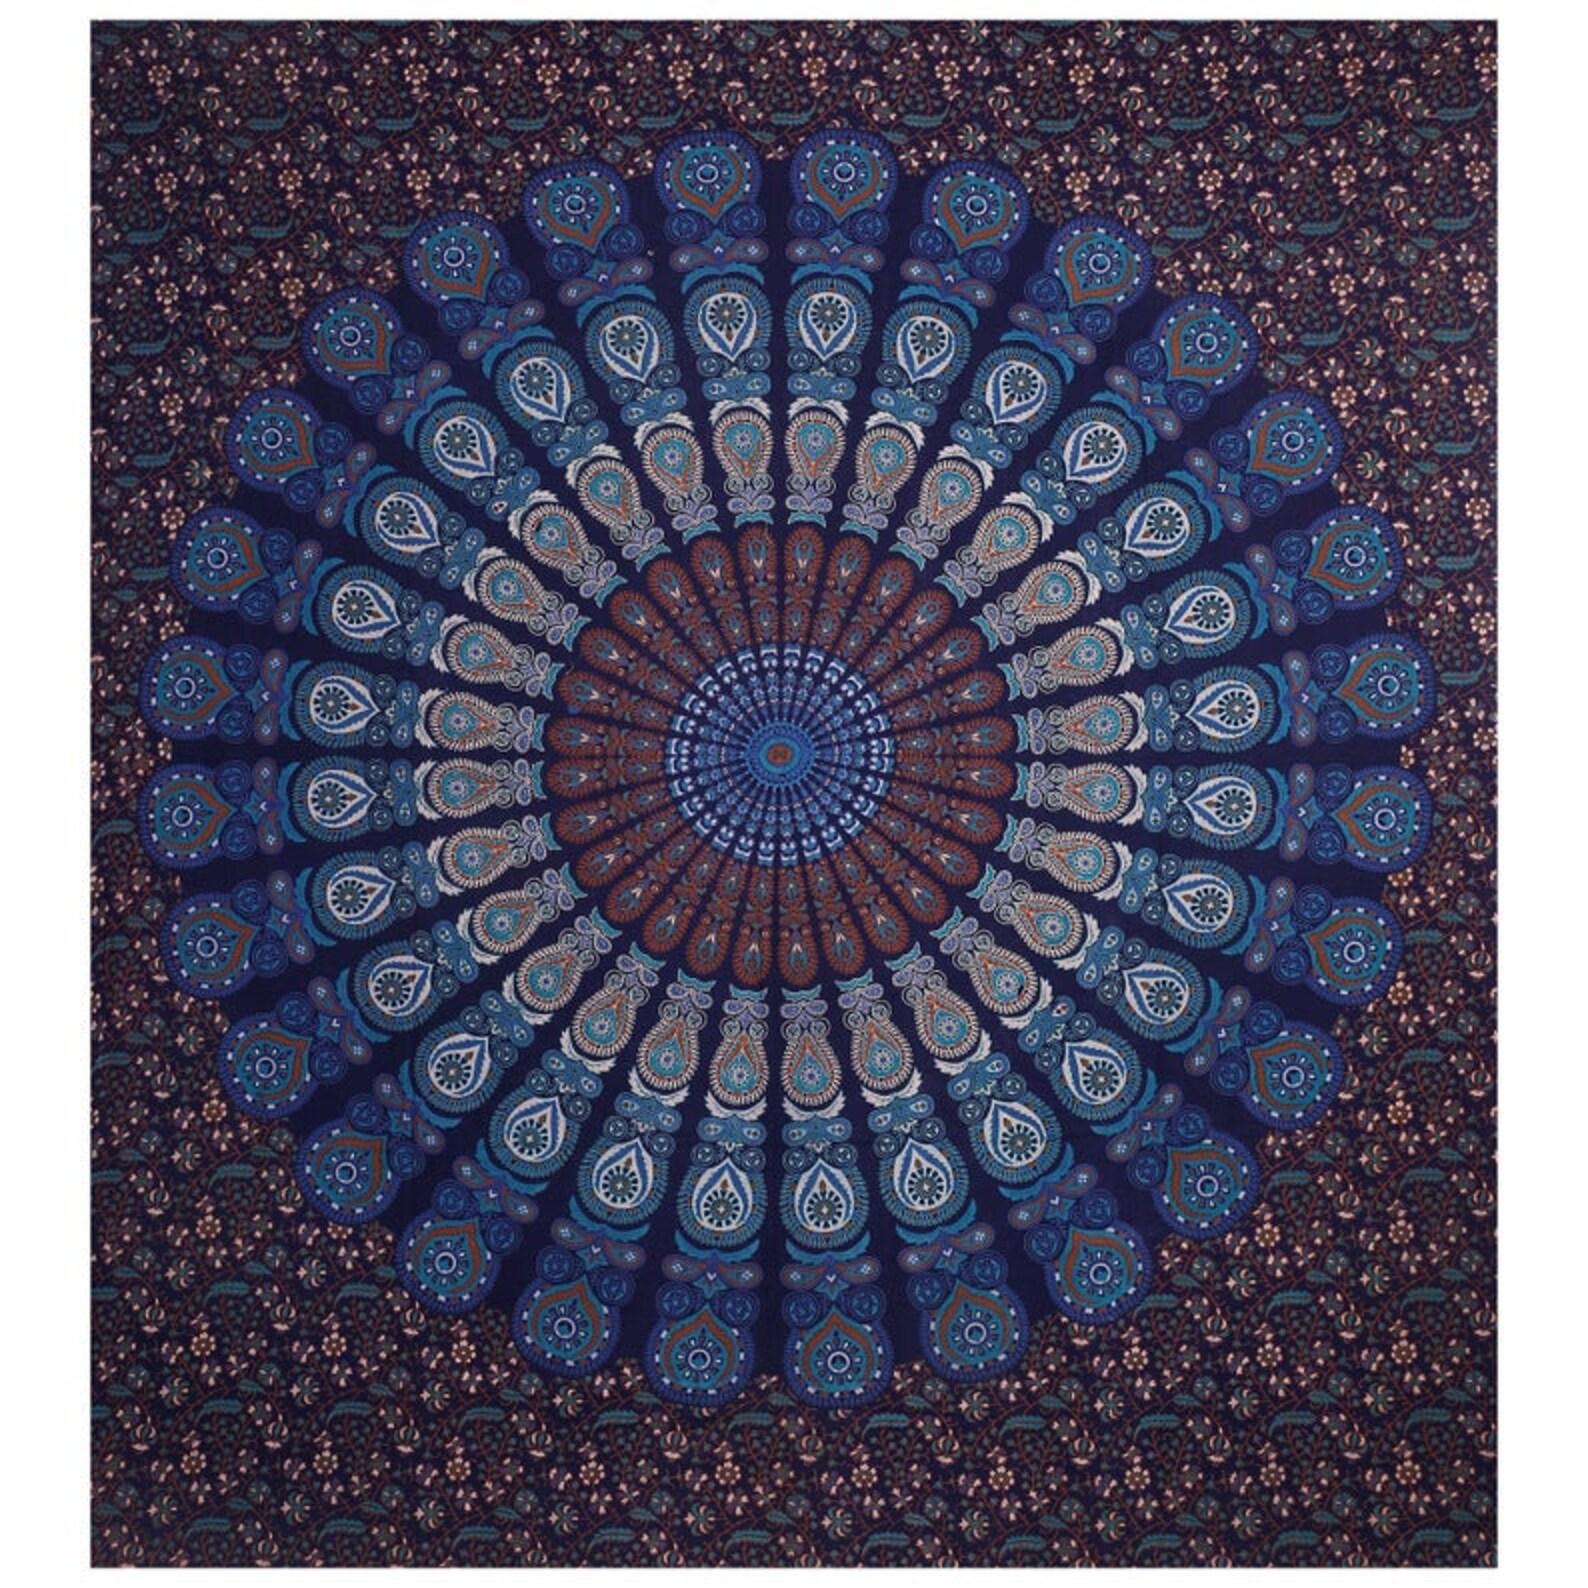 Indian Floral Mandala Tapestry Wall Hanging Mandala Tapestry | Etsy